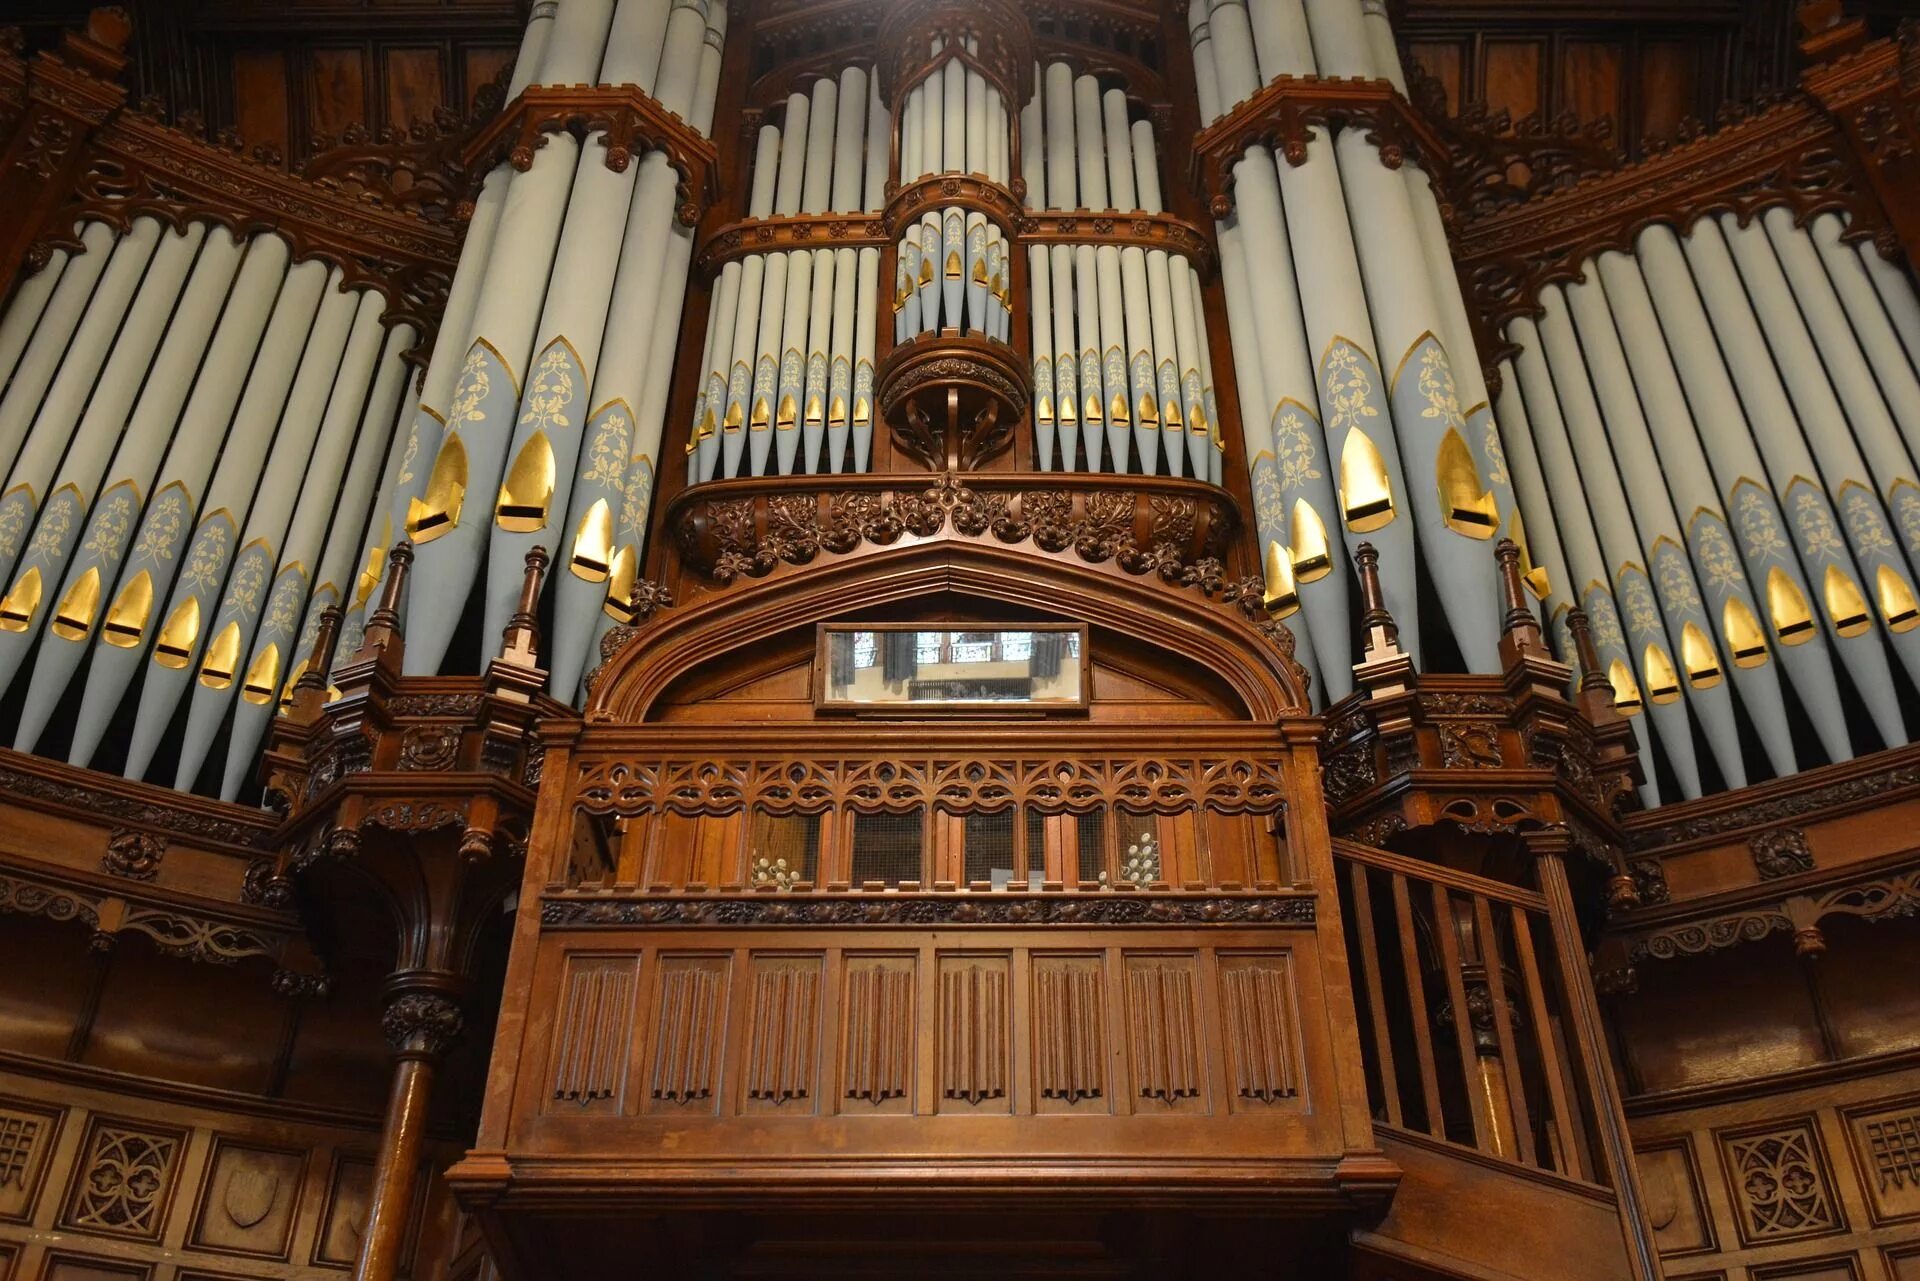 Трубчатый орган 5. Орган концертного зала Бордуок. Ратуша Дерри. Старинный орган. Орган музыкальный инструмент.